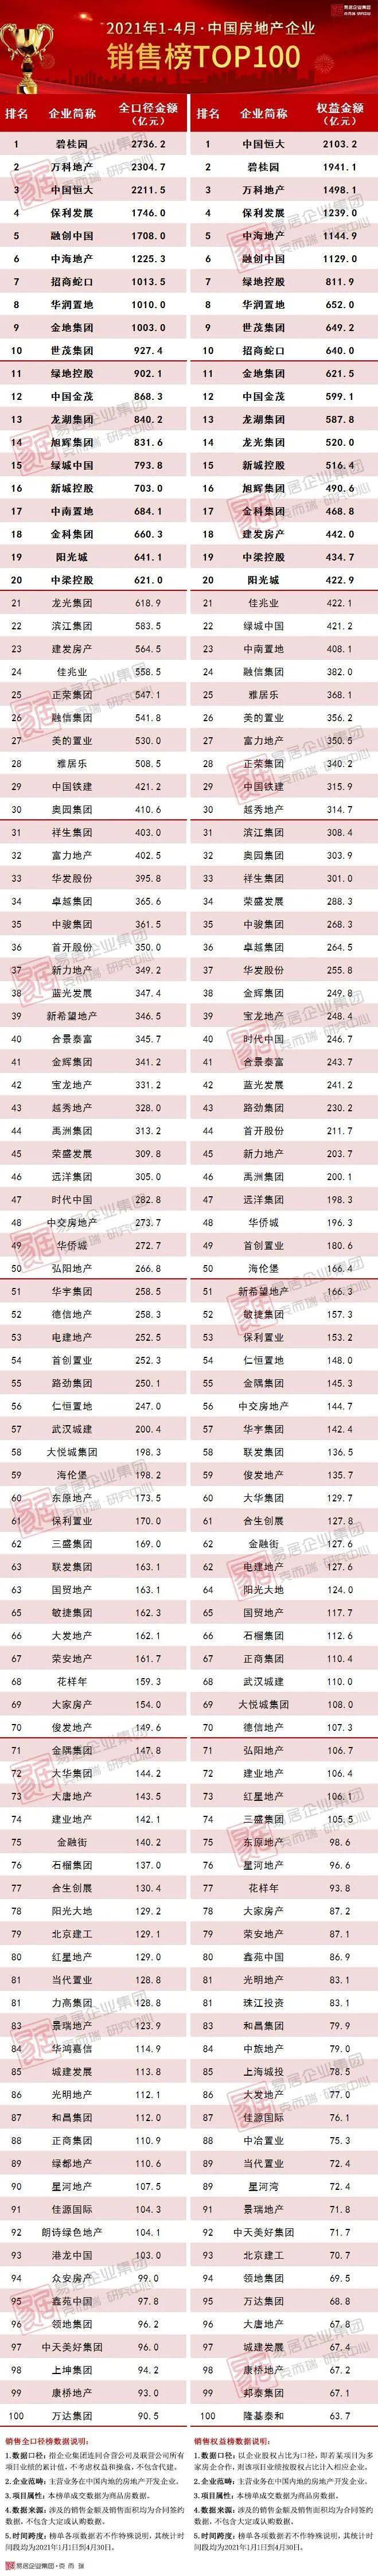 中国房地产排行榜_中国房地产公司排行榜2021新排名:全国知名房企现状